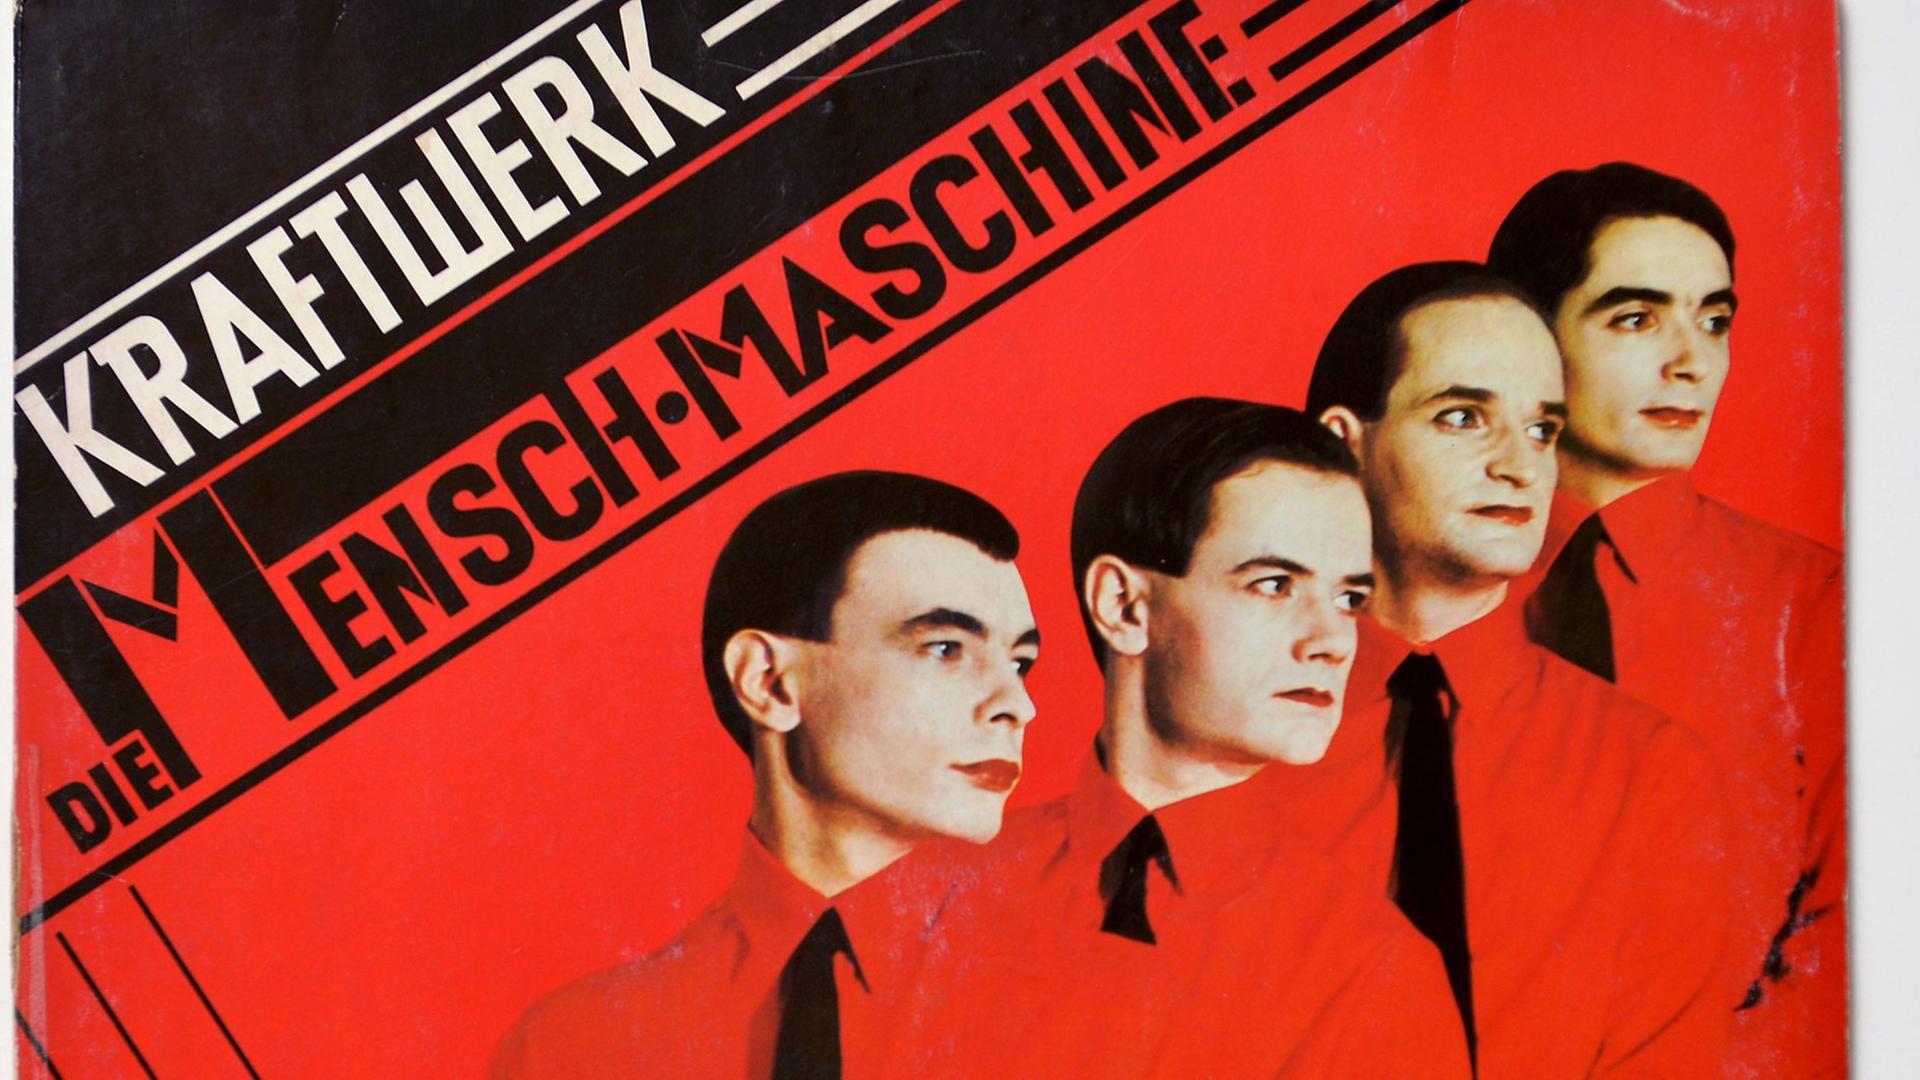 Die Musiker der Gruppe Kraftwerk stehen in roten hemden vor einem roten Hintergrund versetzt hintereinander und schauen nach rechts.